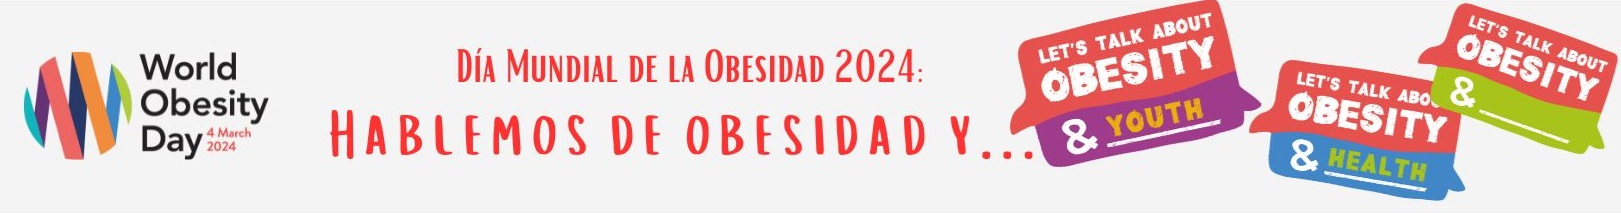 DÍA MUNDIAL DE LA OBESIDAD 2024